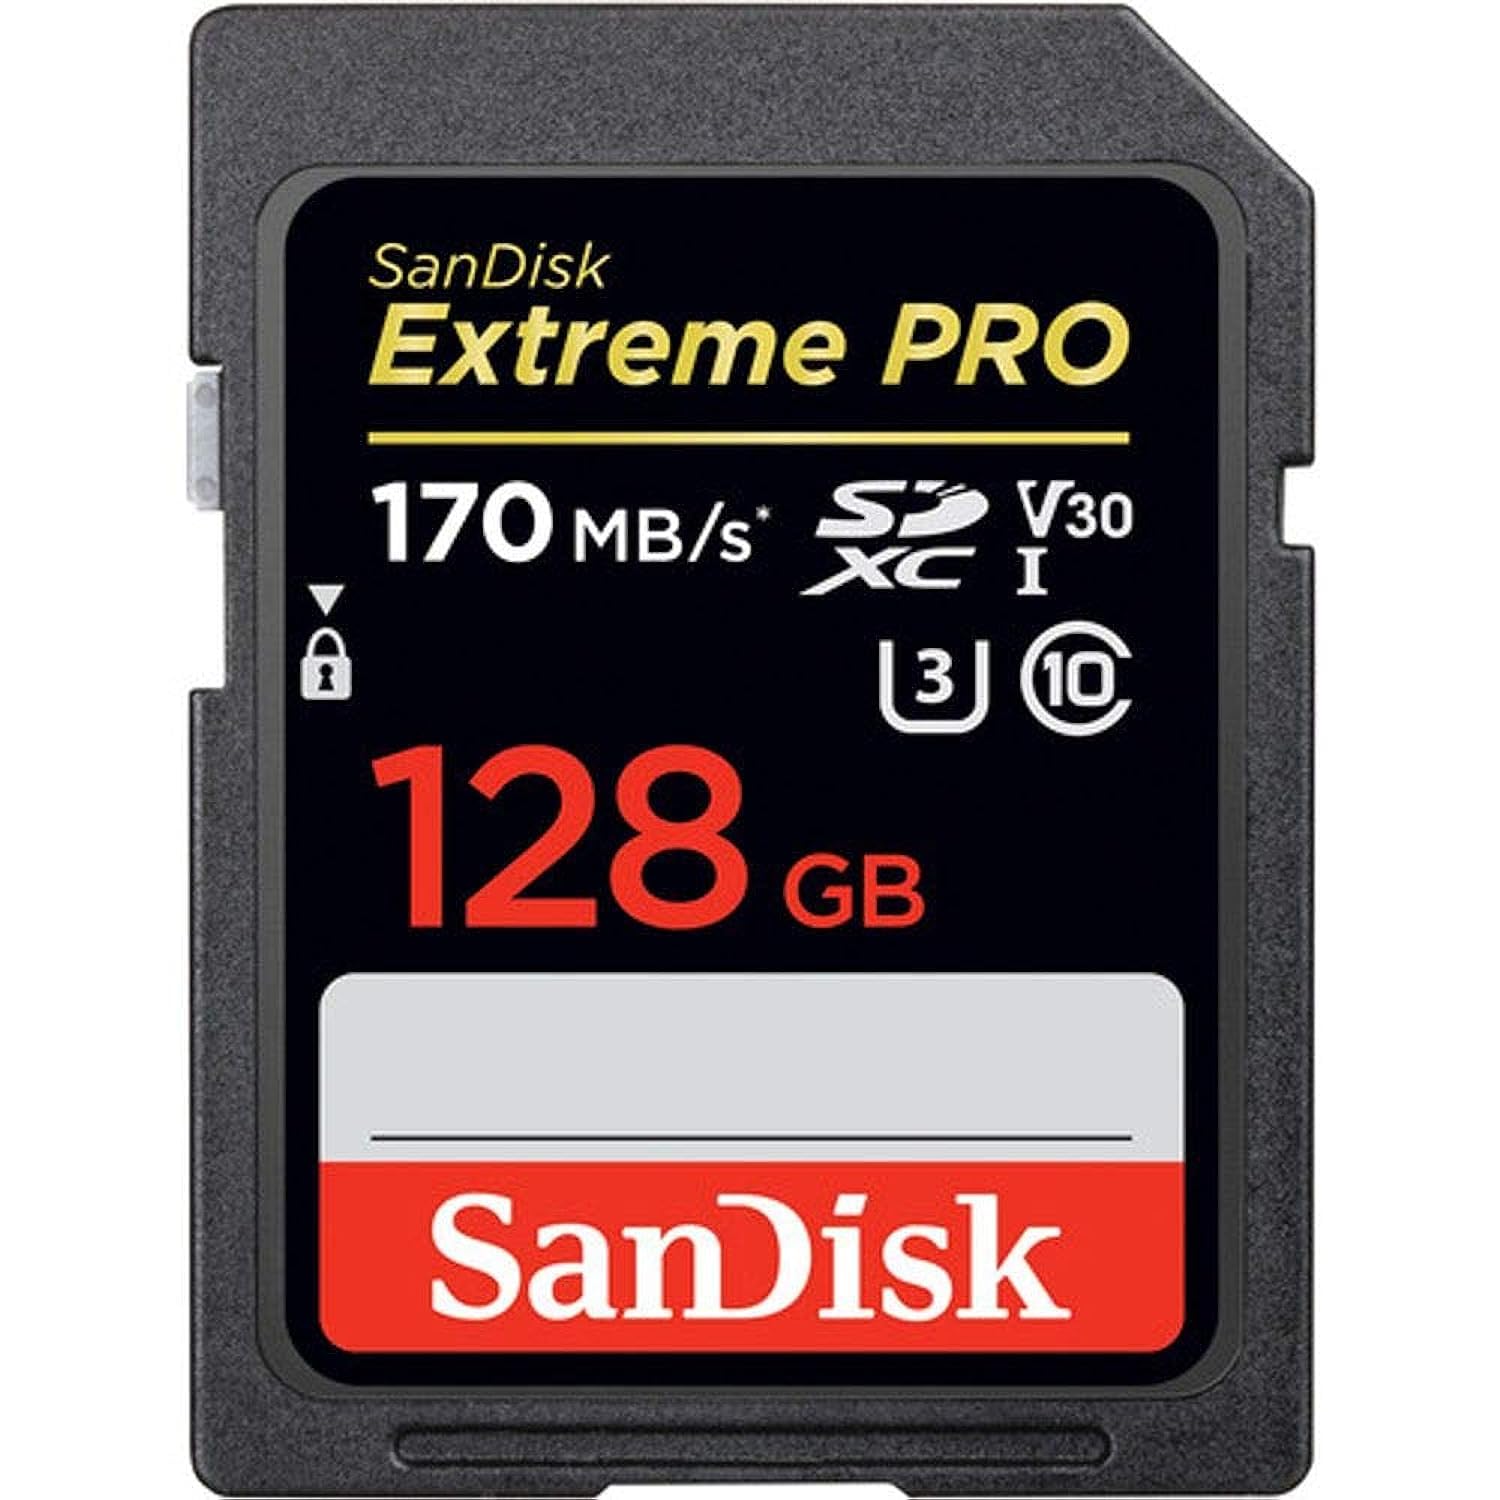 EXTREME PRO SDXC CARD 128GB